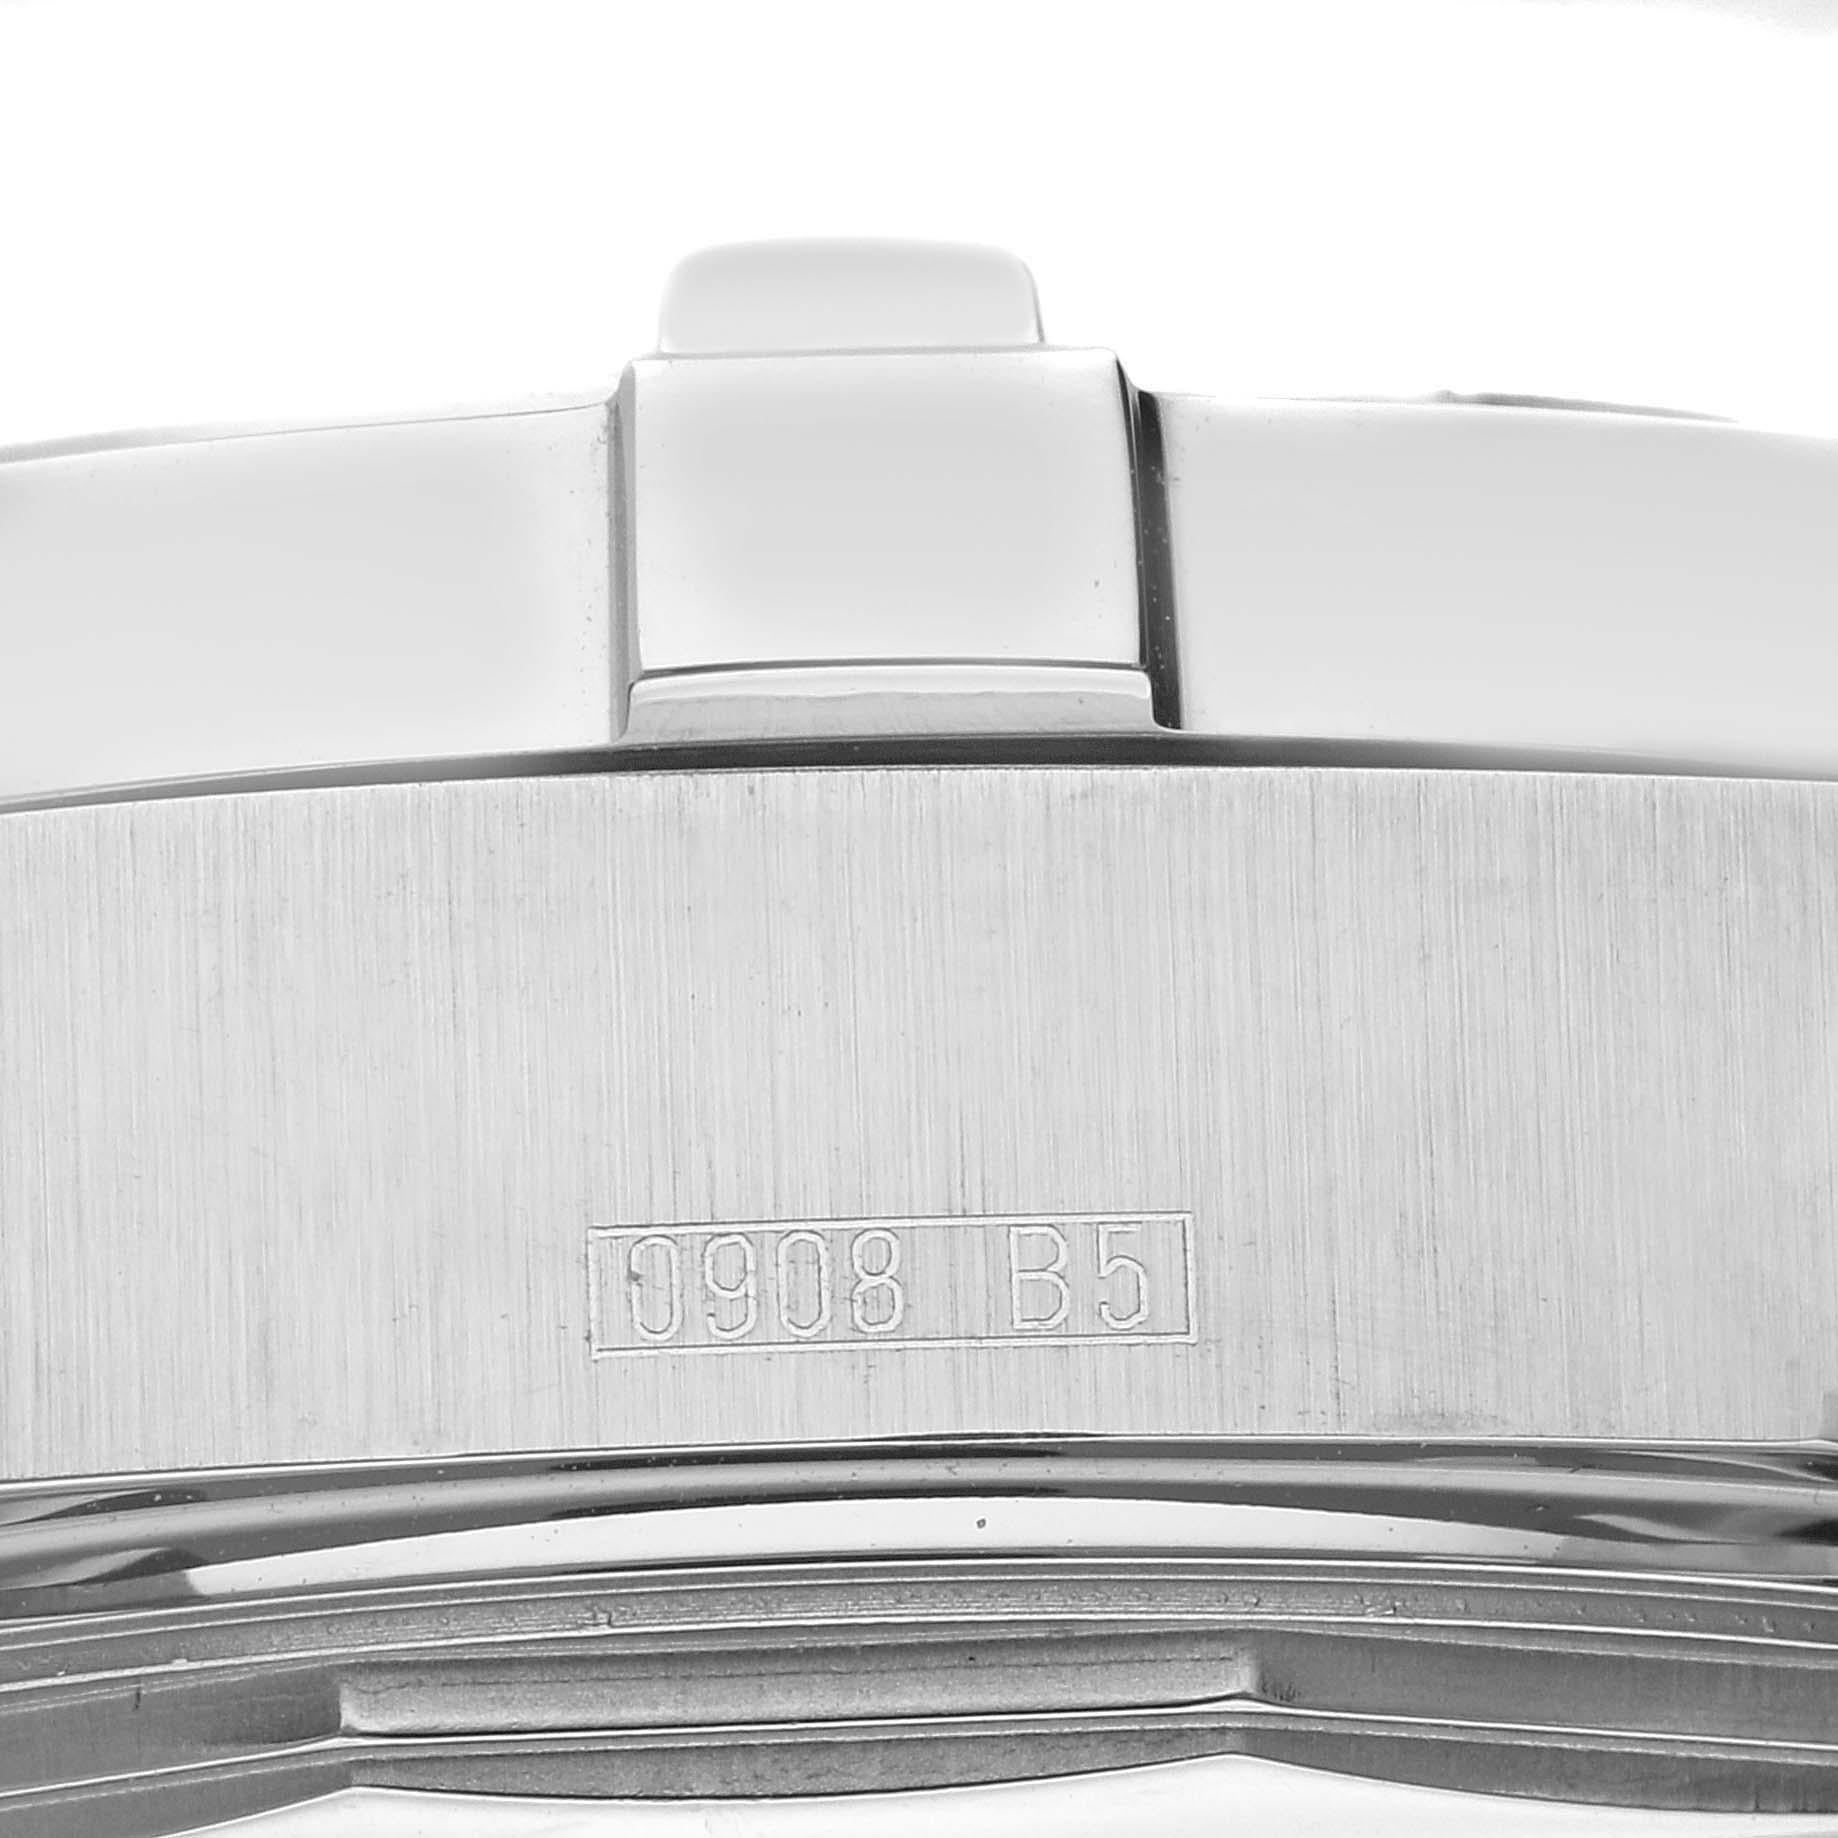 Breitling Superocean Steelfish Schwarzes Zifferblatt Stahl Herrenuhr A17390. Automatisches Uhrwerk mit Selbstaufzug. Gehäuse aus Edelstahl mit einem Durchmesser von 44 mm. Verschraubte Krone aus Edelstahl. Einseitig drehbare Lünette aus Edelstahl.